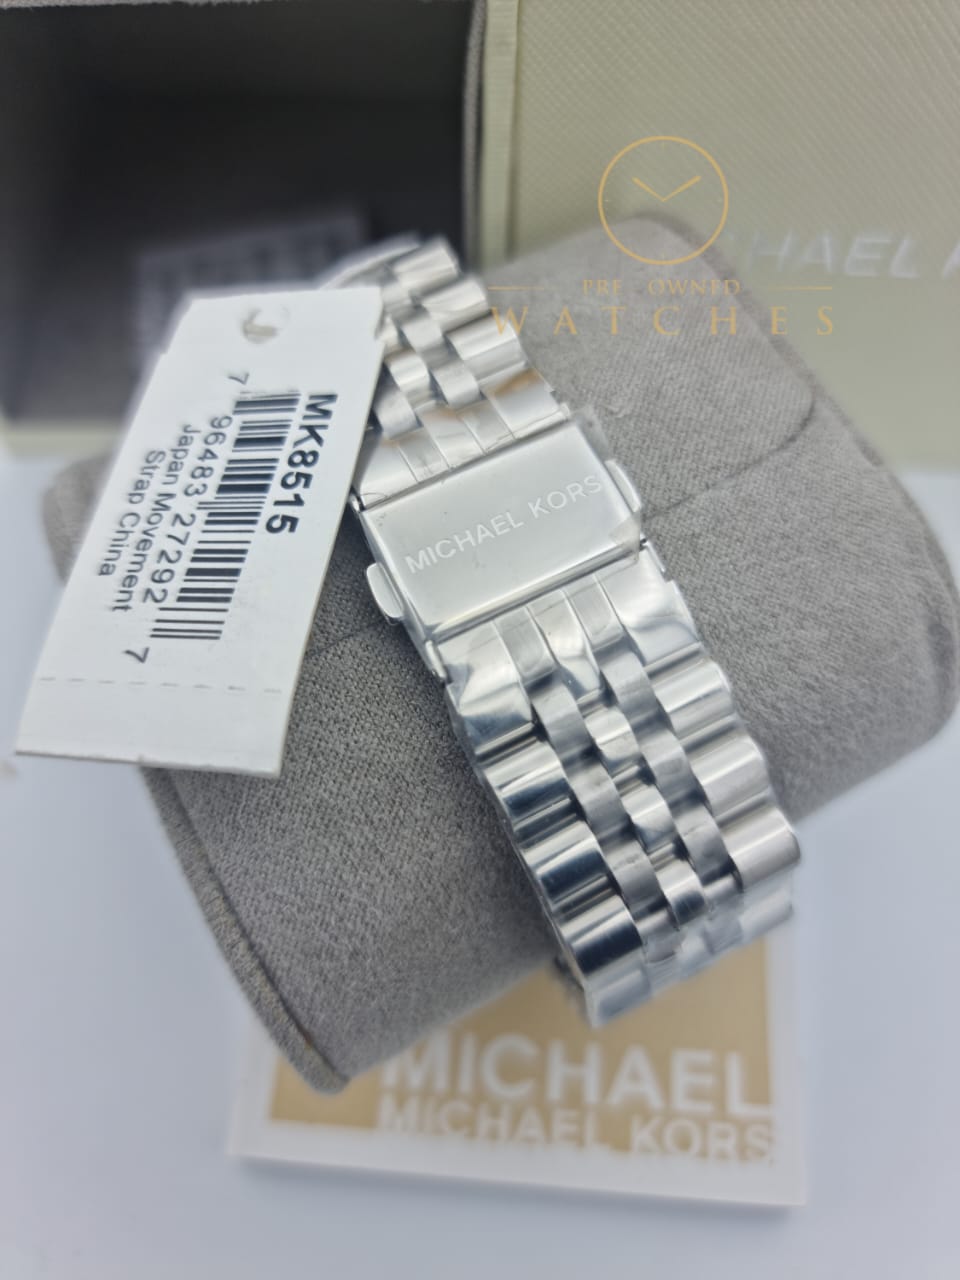 Michael Kors Men's Lexington Silver-Tone Watch MK8515